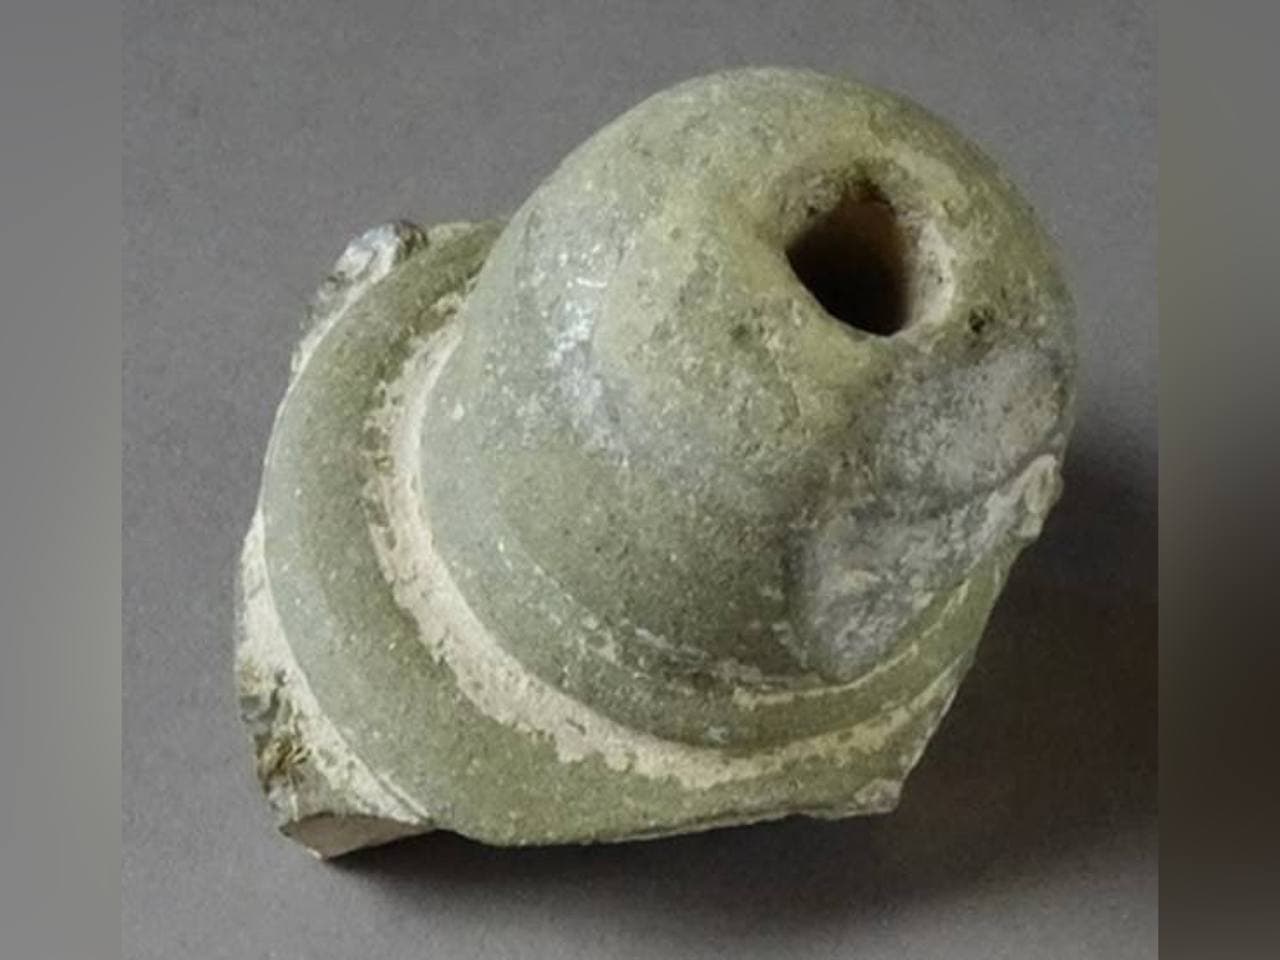 Осколок сосуда, который, предположительно, использовался в качестве гранаты во времена крестовых походов. Фото © PLOS One